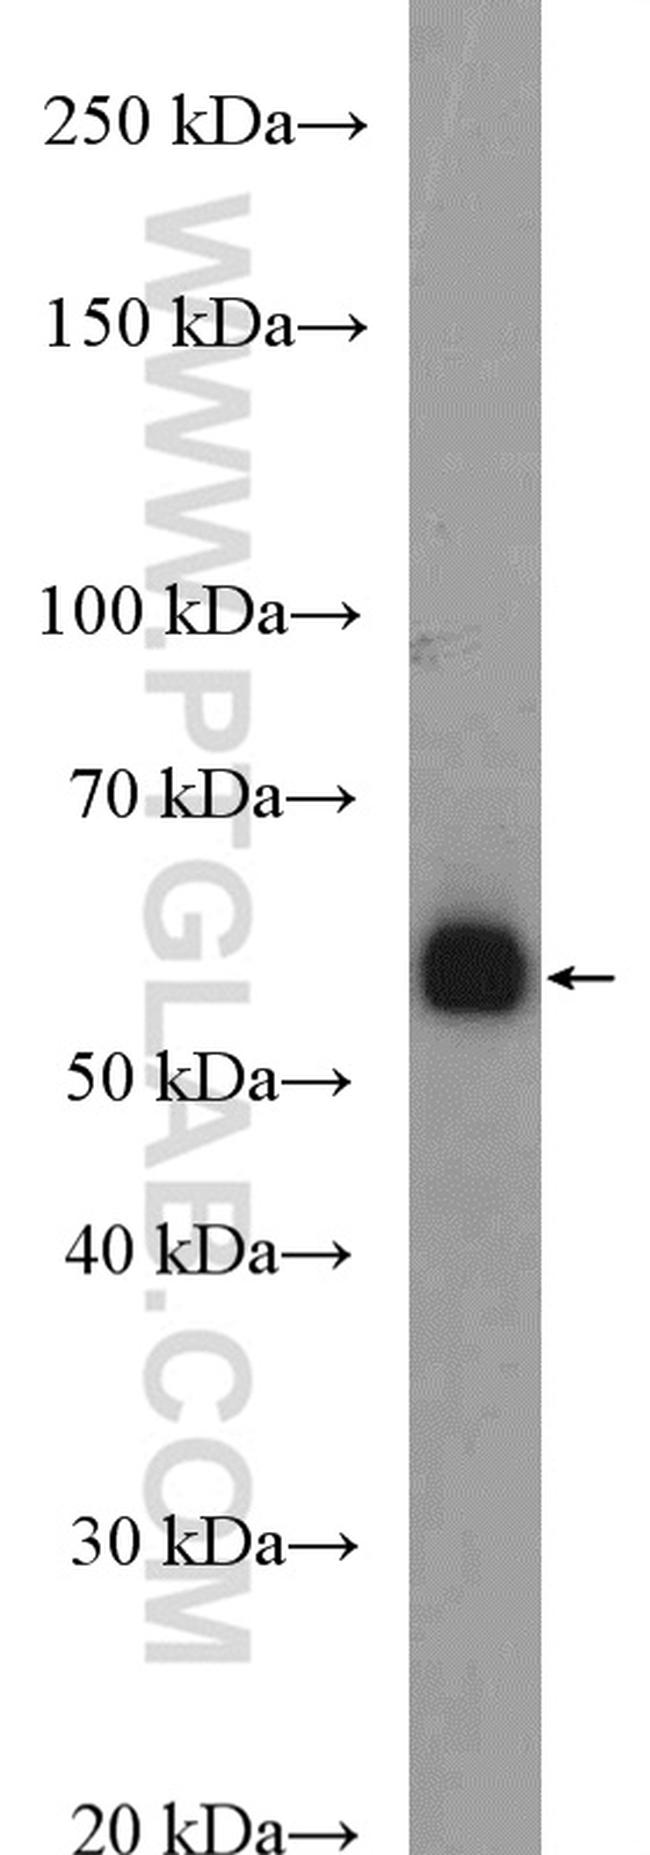 C6orf150 Antibody in Western Blot (WB)